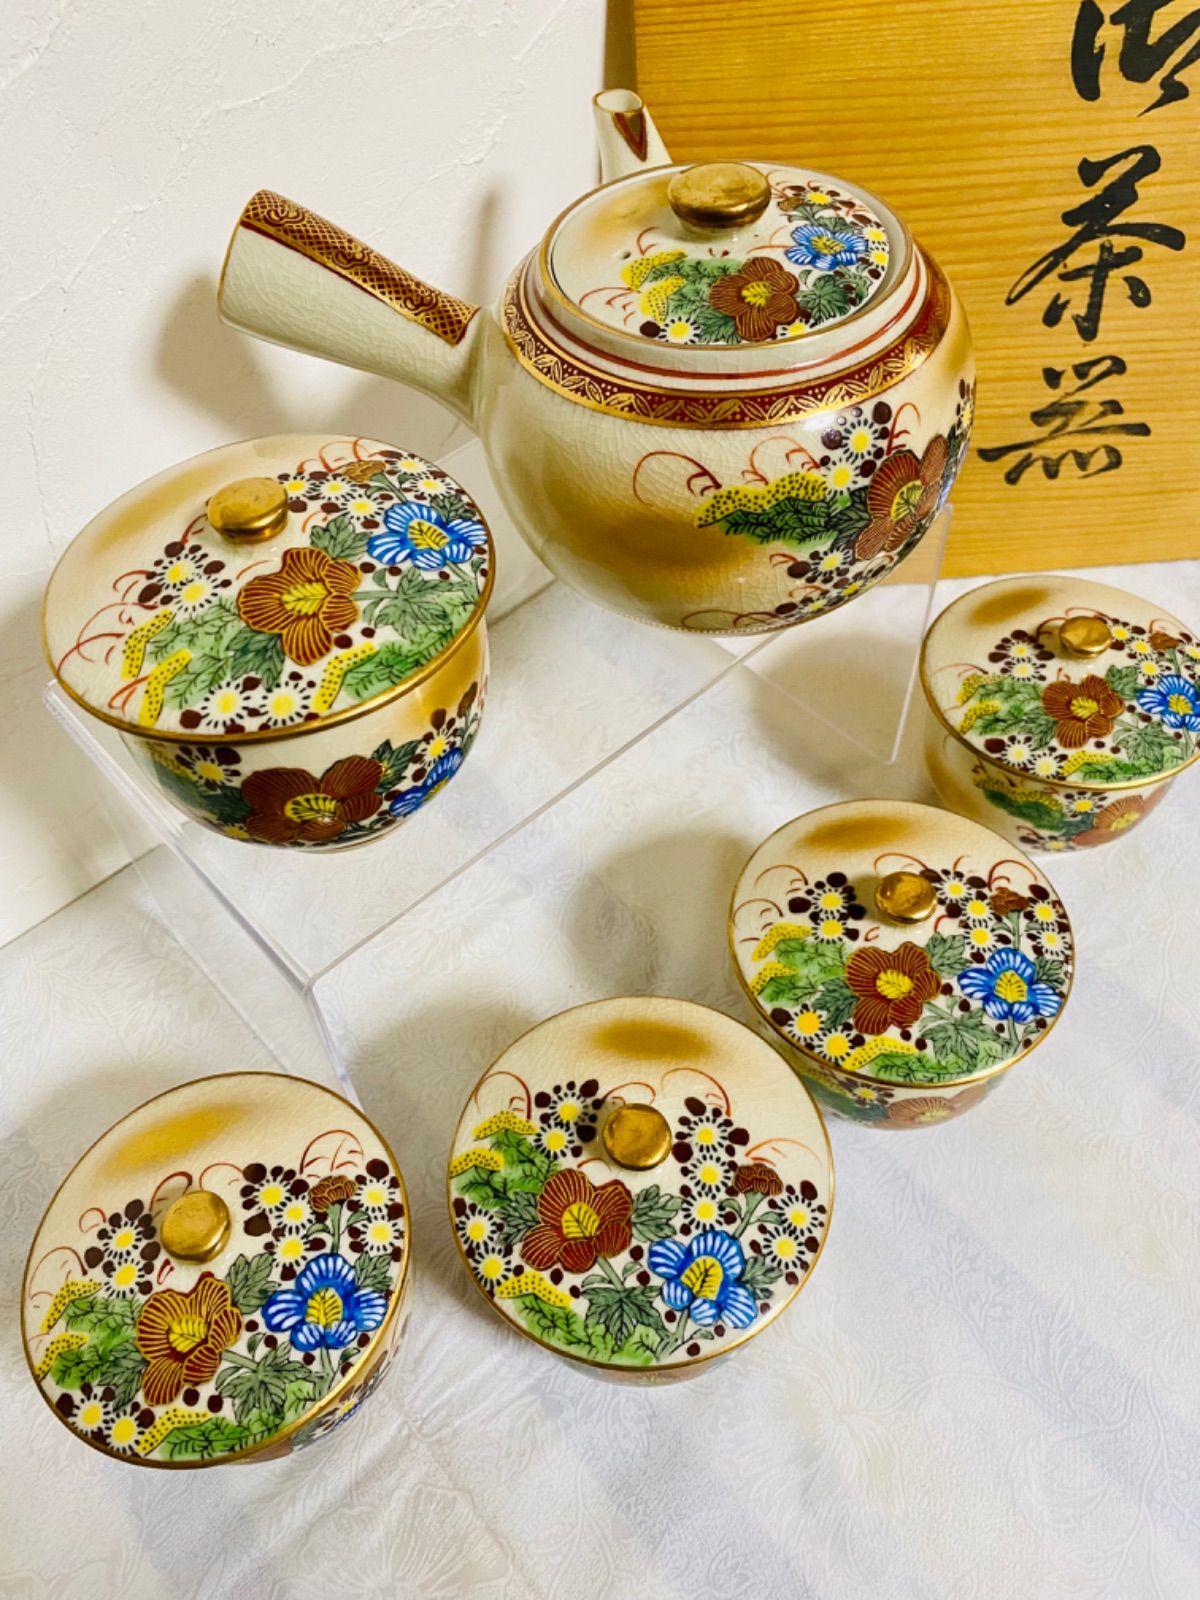 九谷焼 高級 茶器揃え 蓋付き湯呑み | yemnews.net